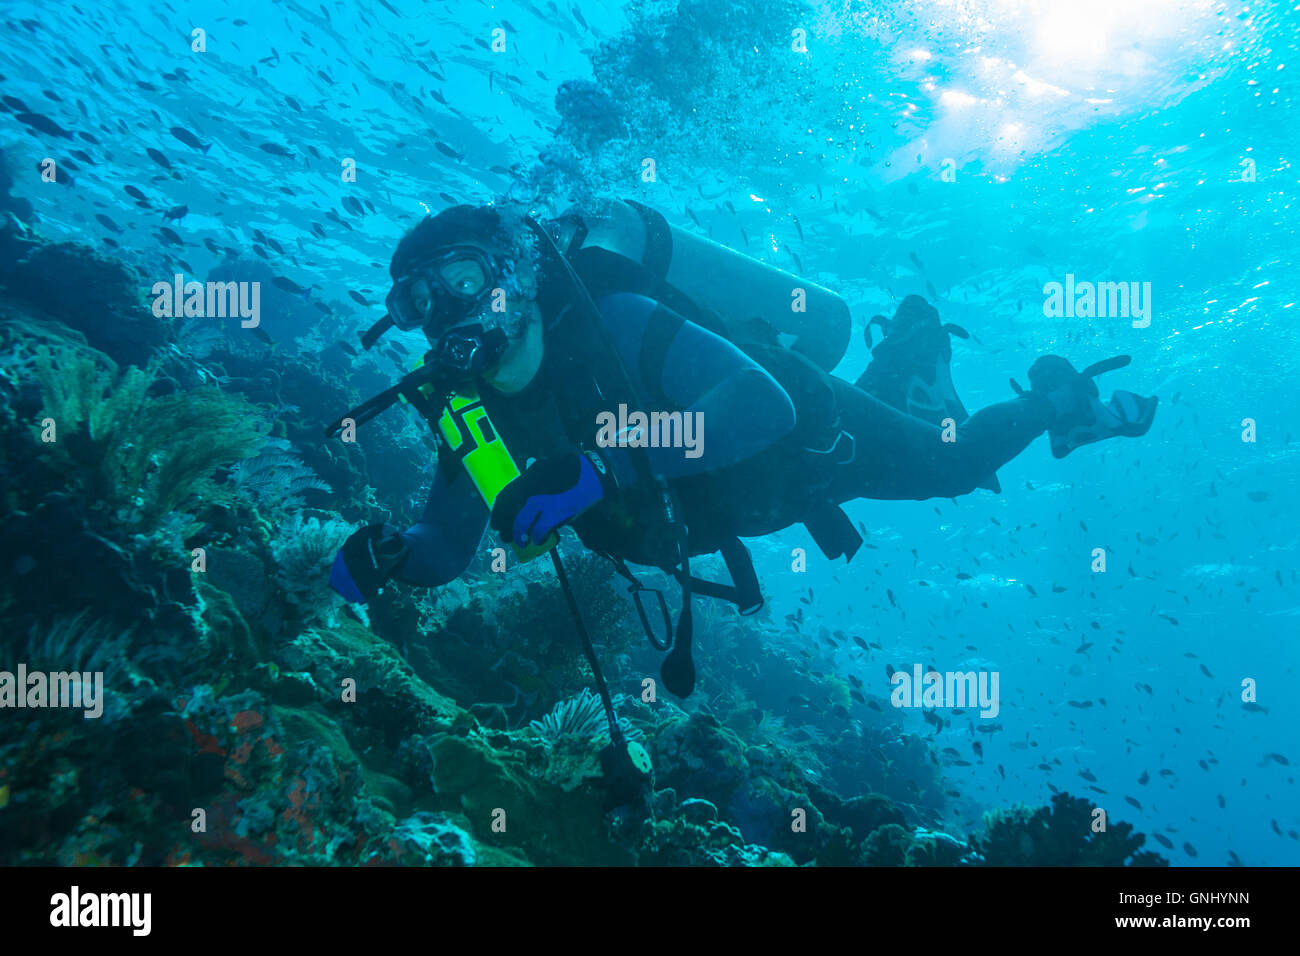 L'ÎLE DE BALI, INDONÉSIE - 20 août 2008 : natation plongeur inconnu près de coral reef avec réservoir de rechange Banque D'Images